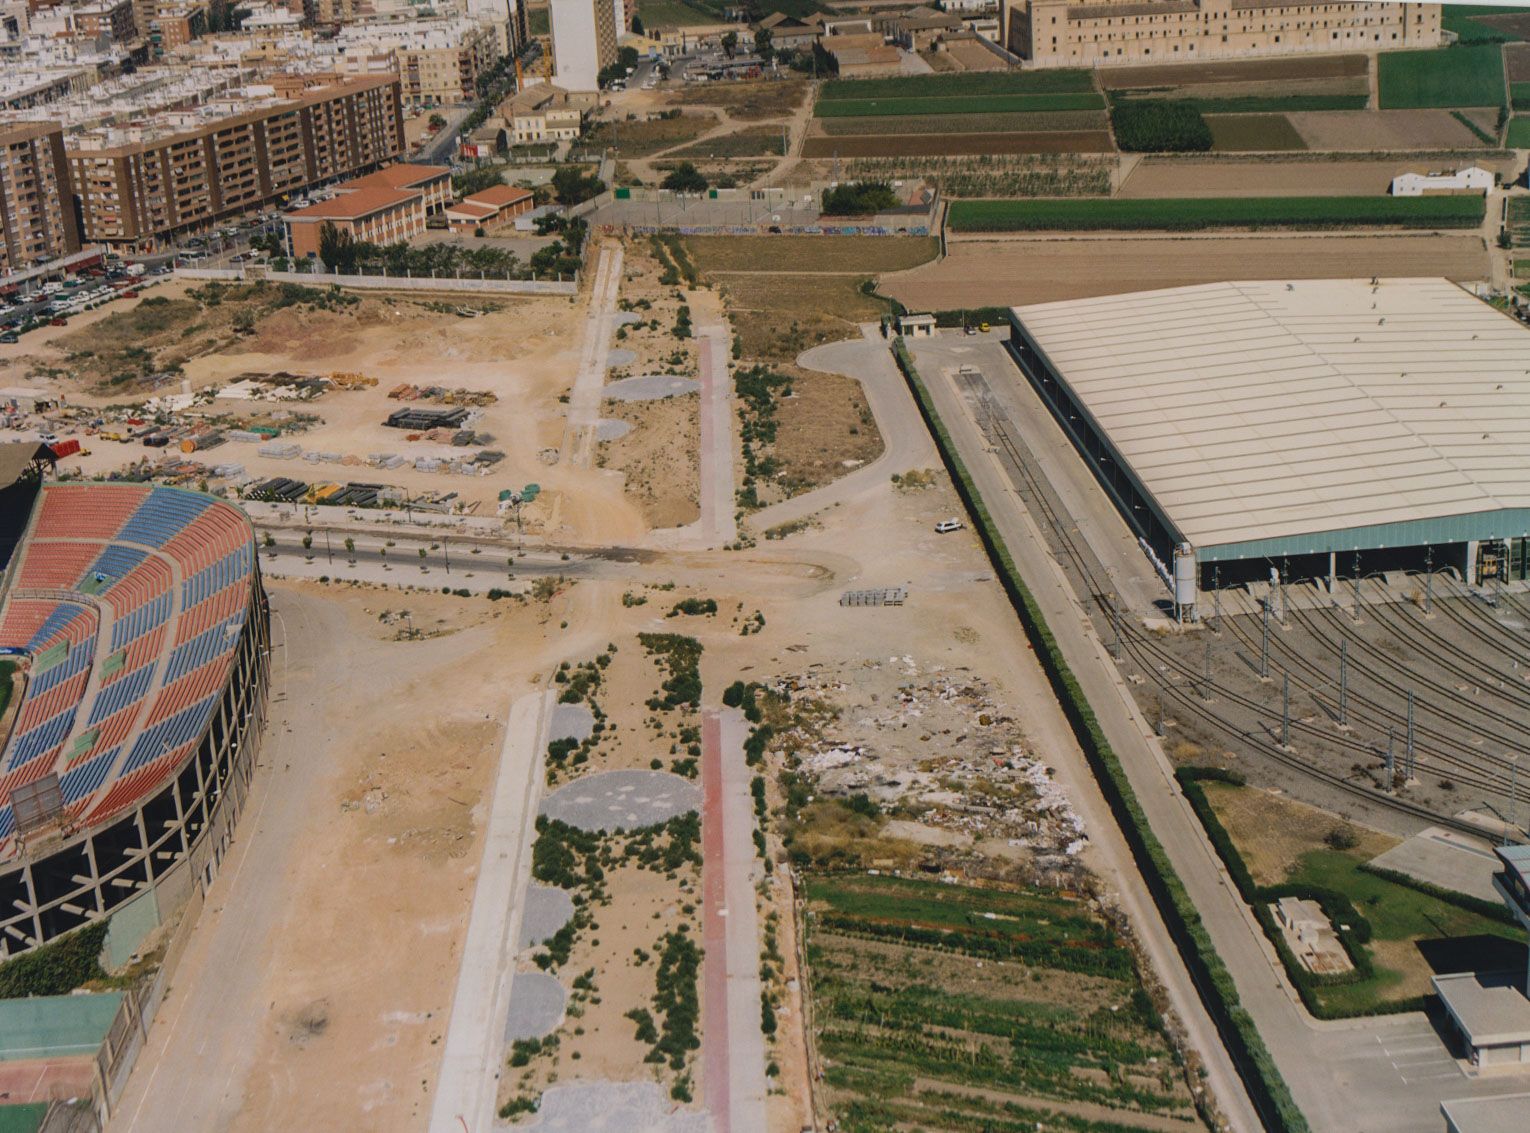 La València desaparecida: Orriols en los 80/90